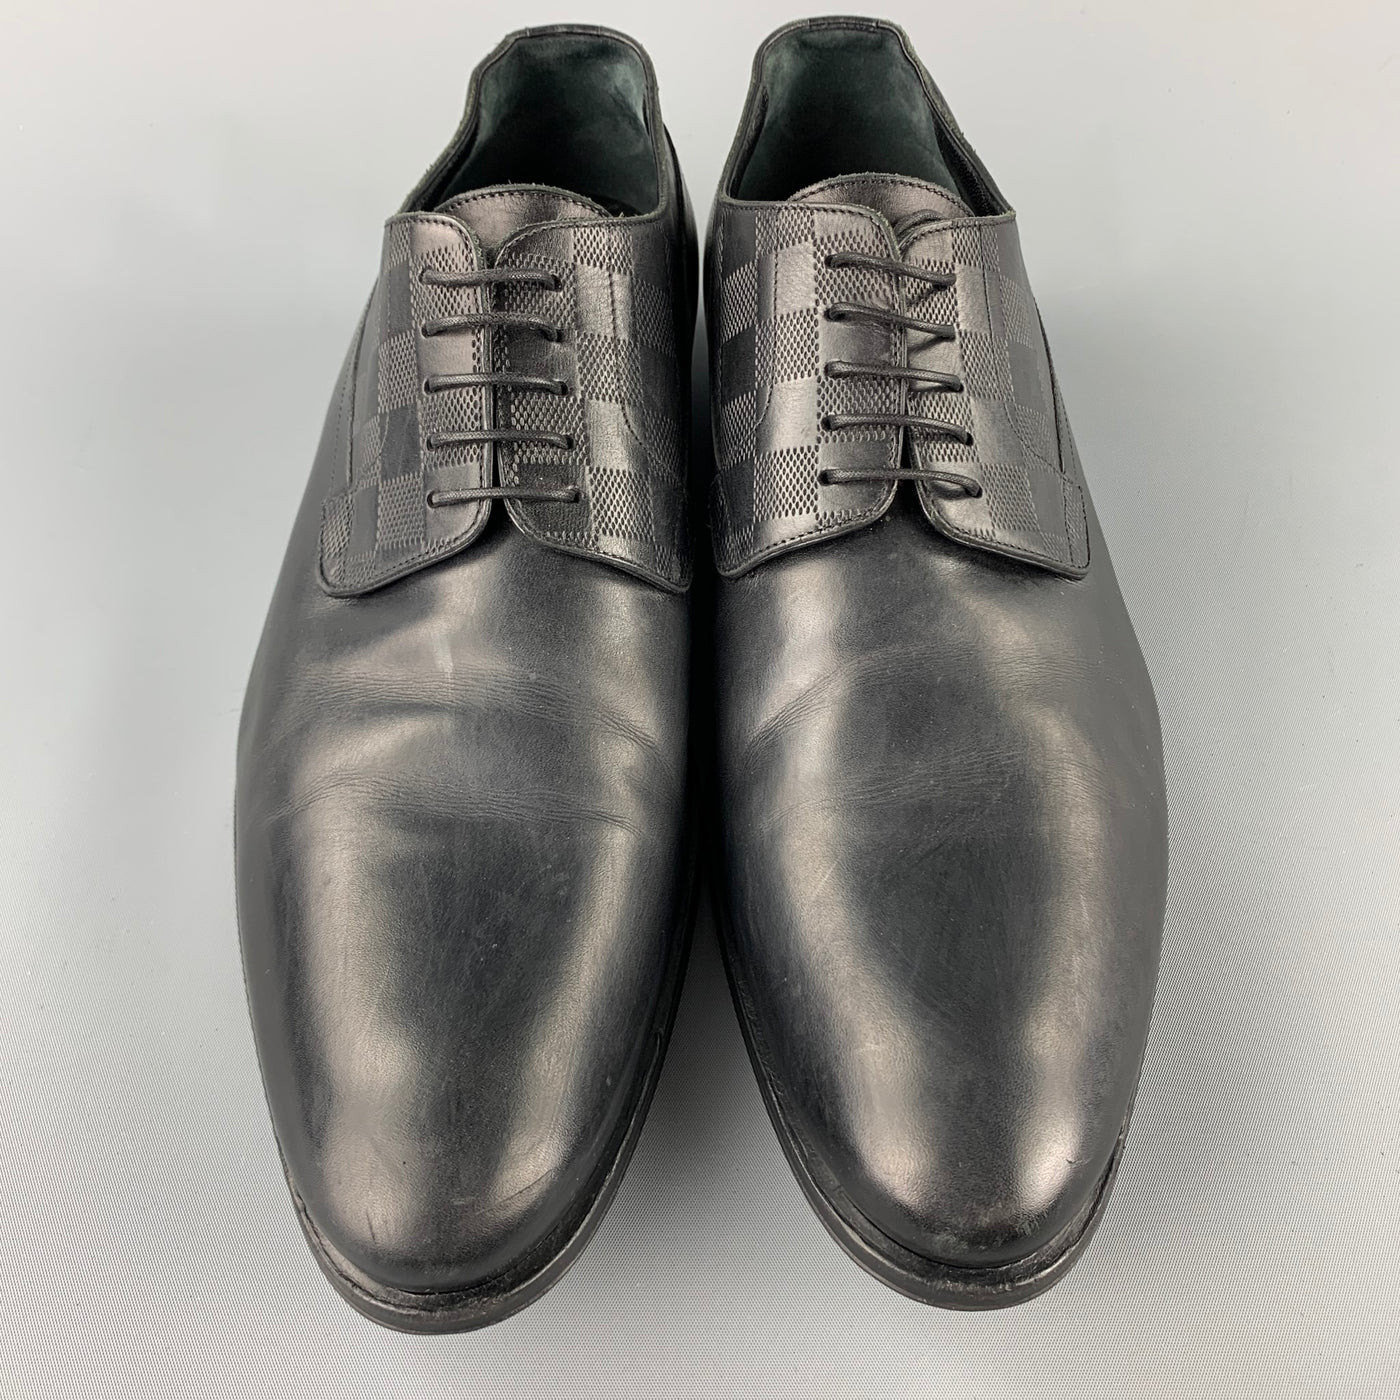 Buy Louis Vuitton shoes Leather men's shoes Lace-up casual shoes